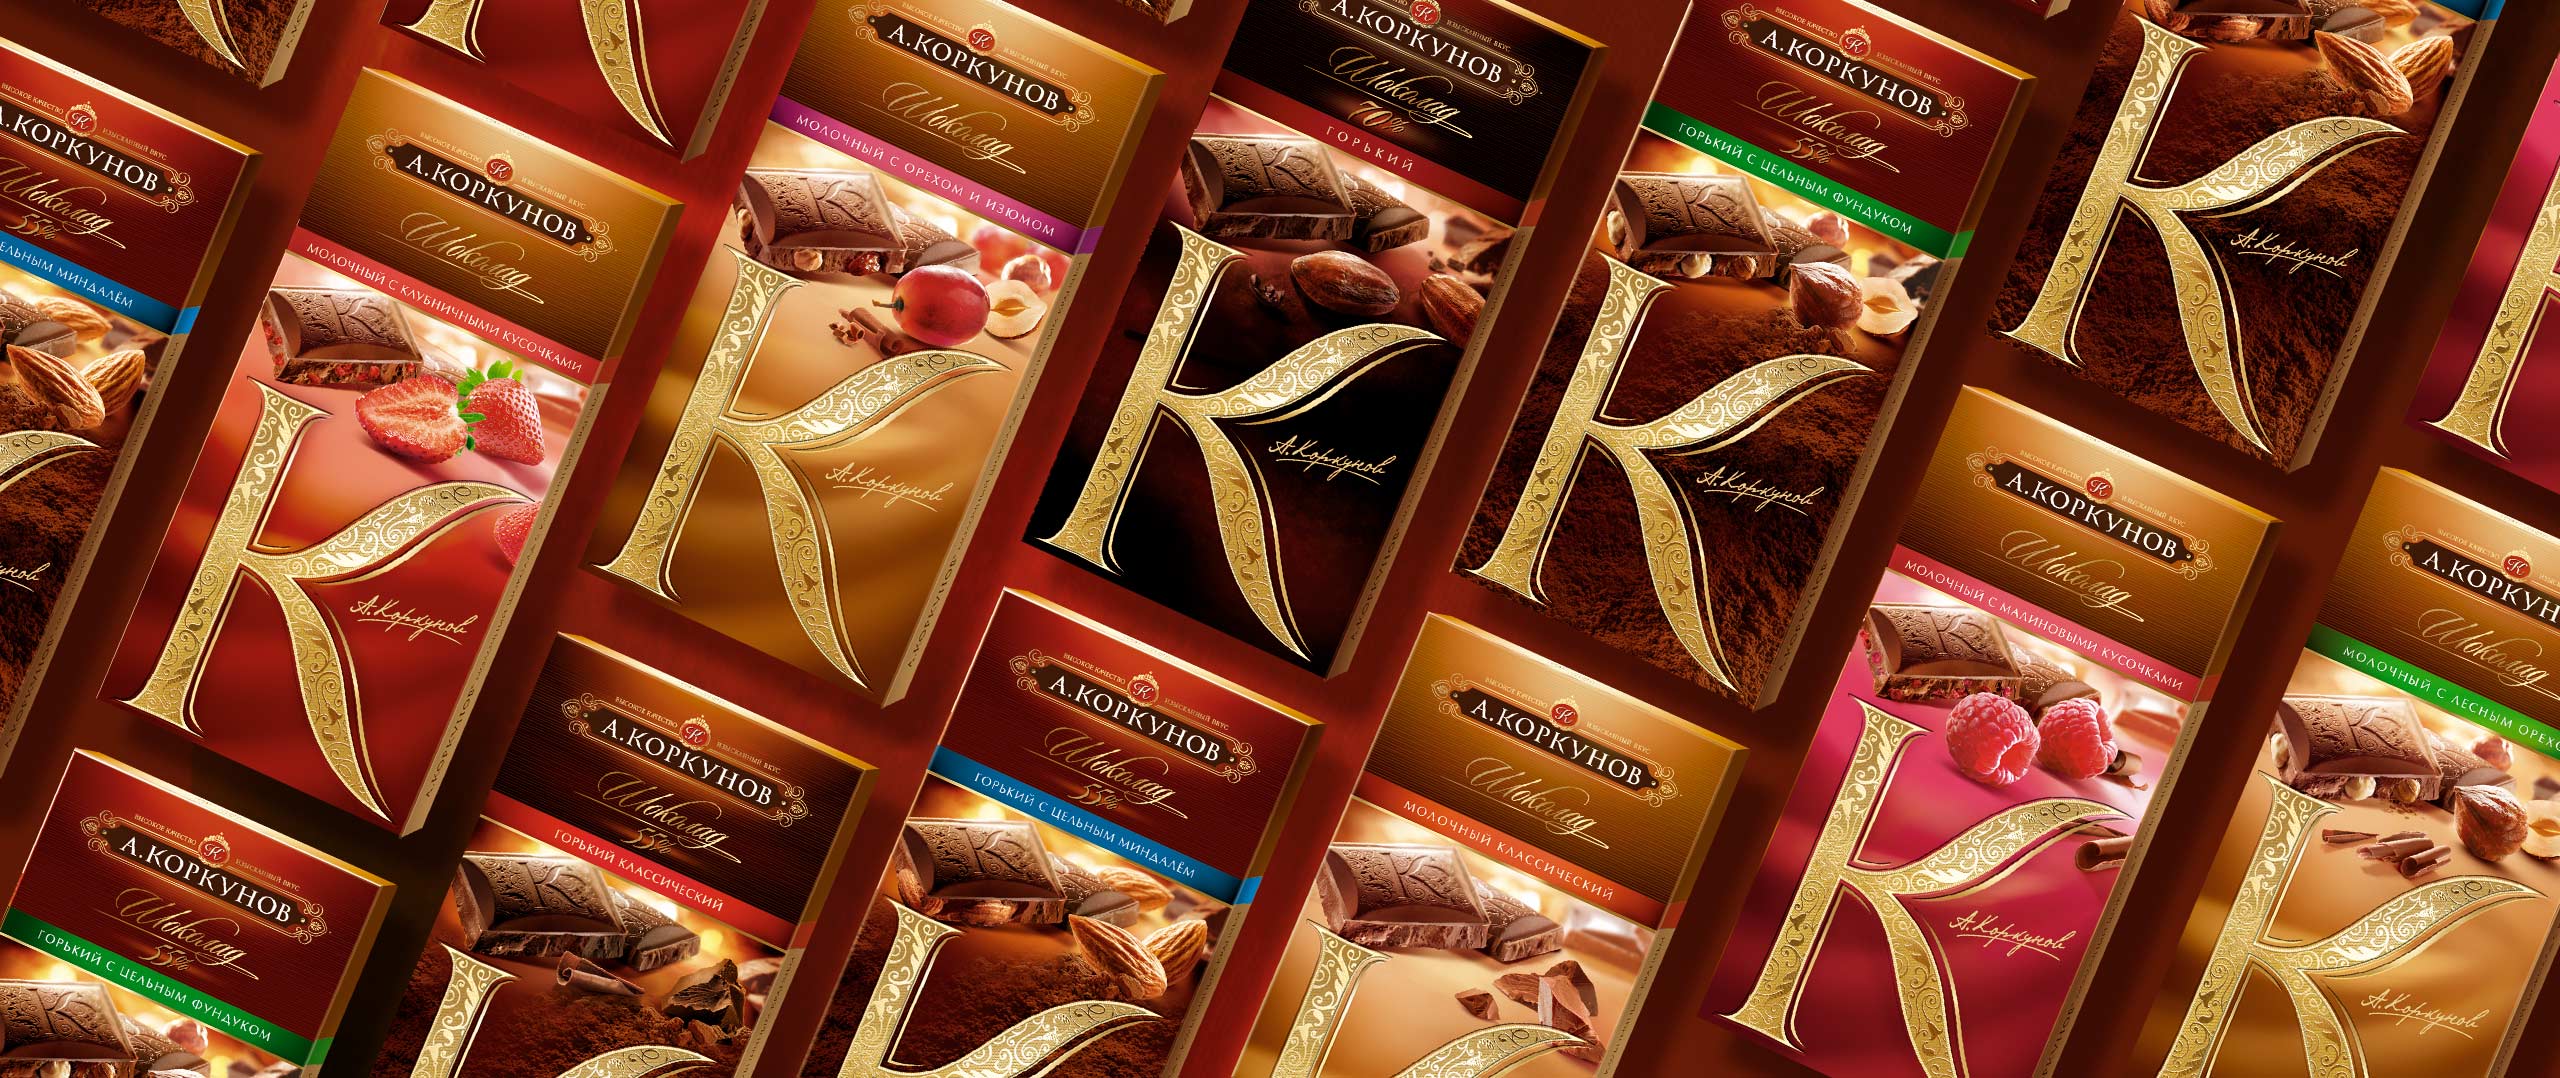 korkunov-chocolate-bars.jpg